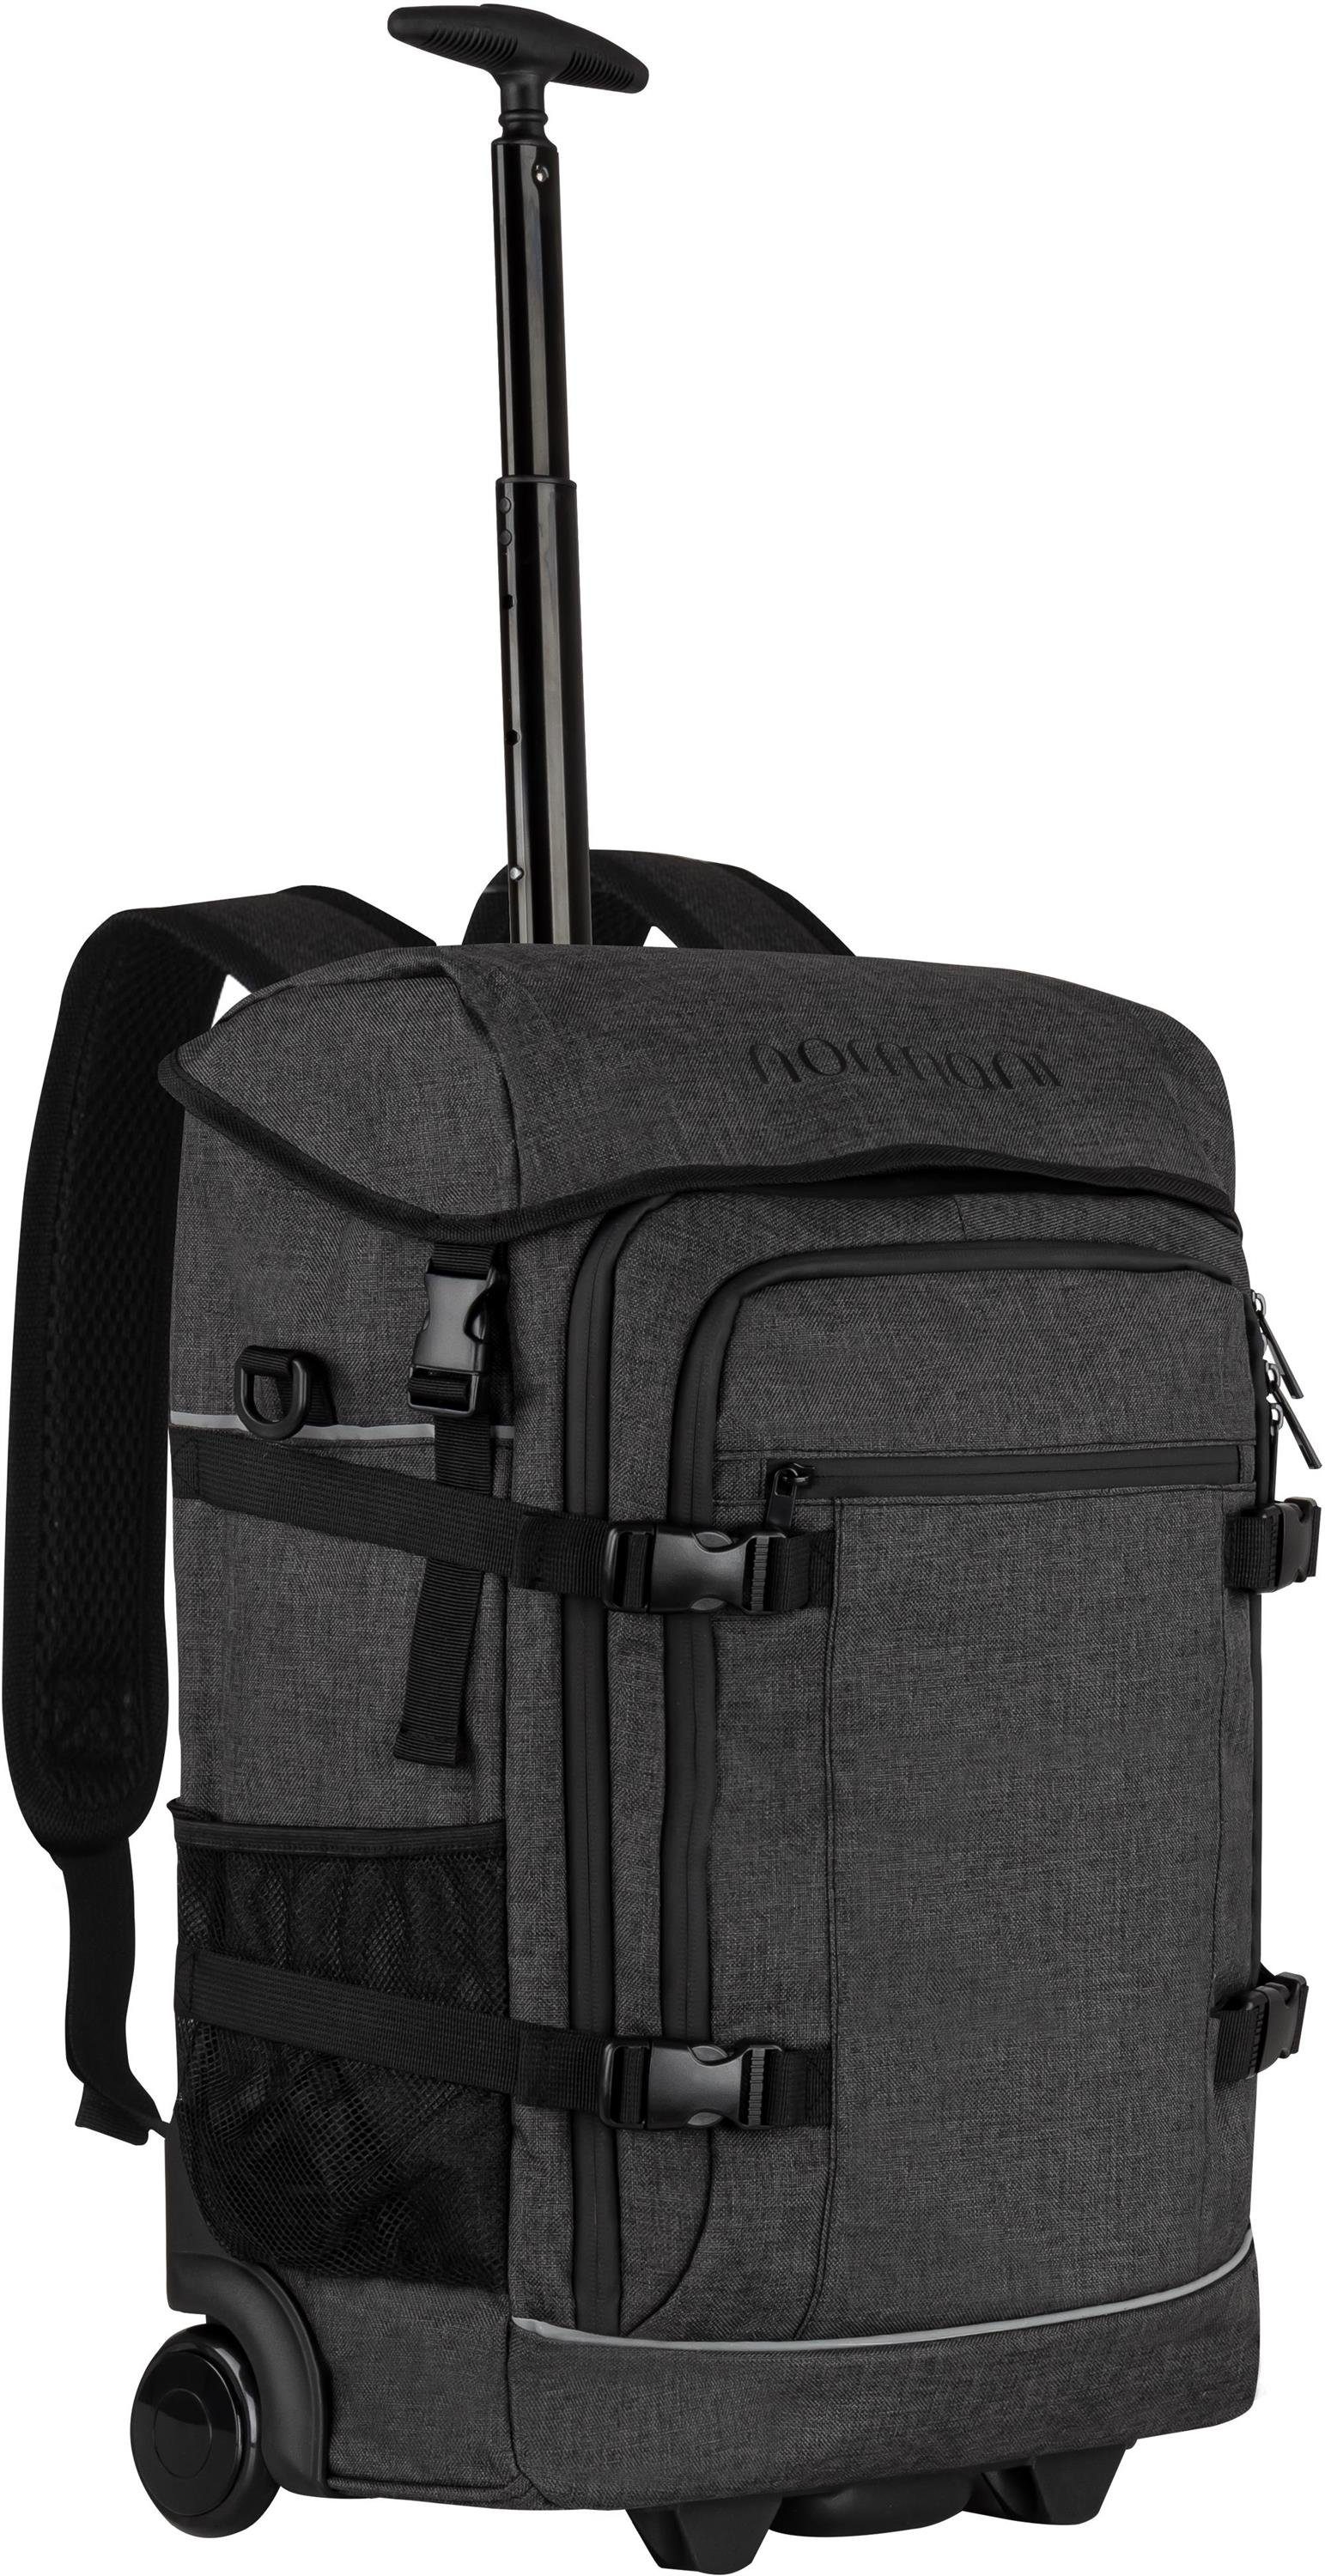 Trolley mit und kleinem Trolleyfuktion Rucksack, mit Reisetasche Rucksackfuntkion normani Handgepäck in Rucksack Maßen